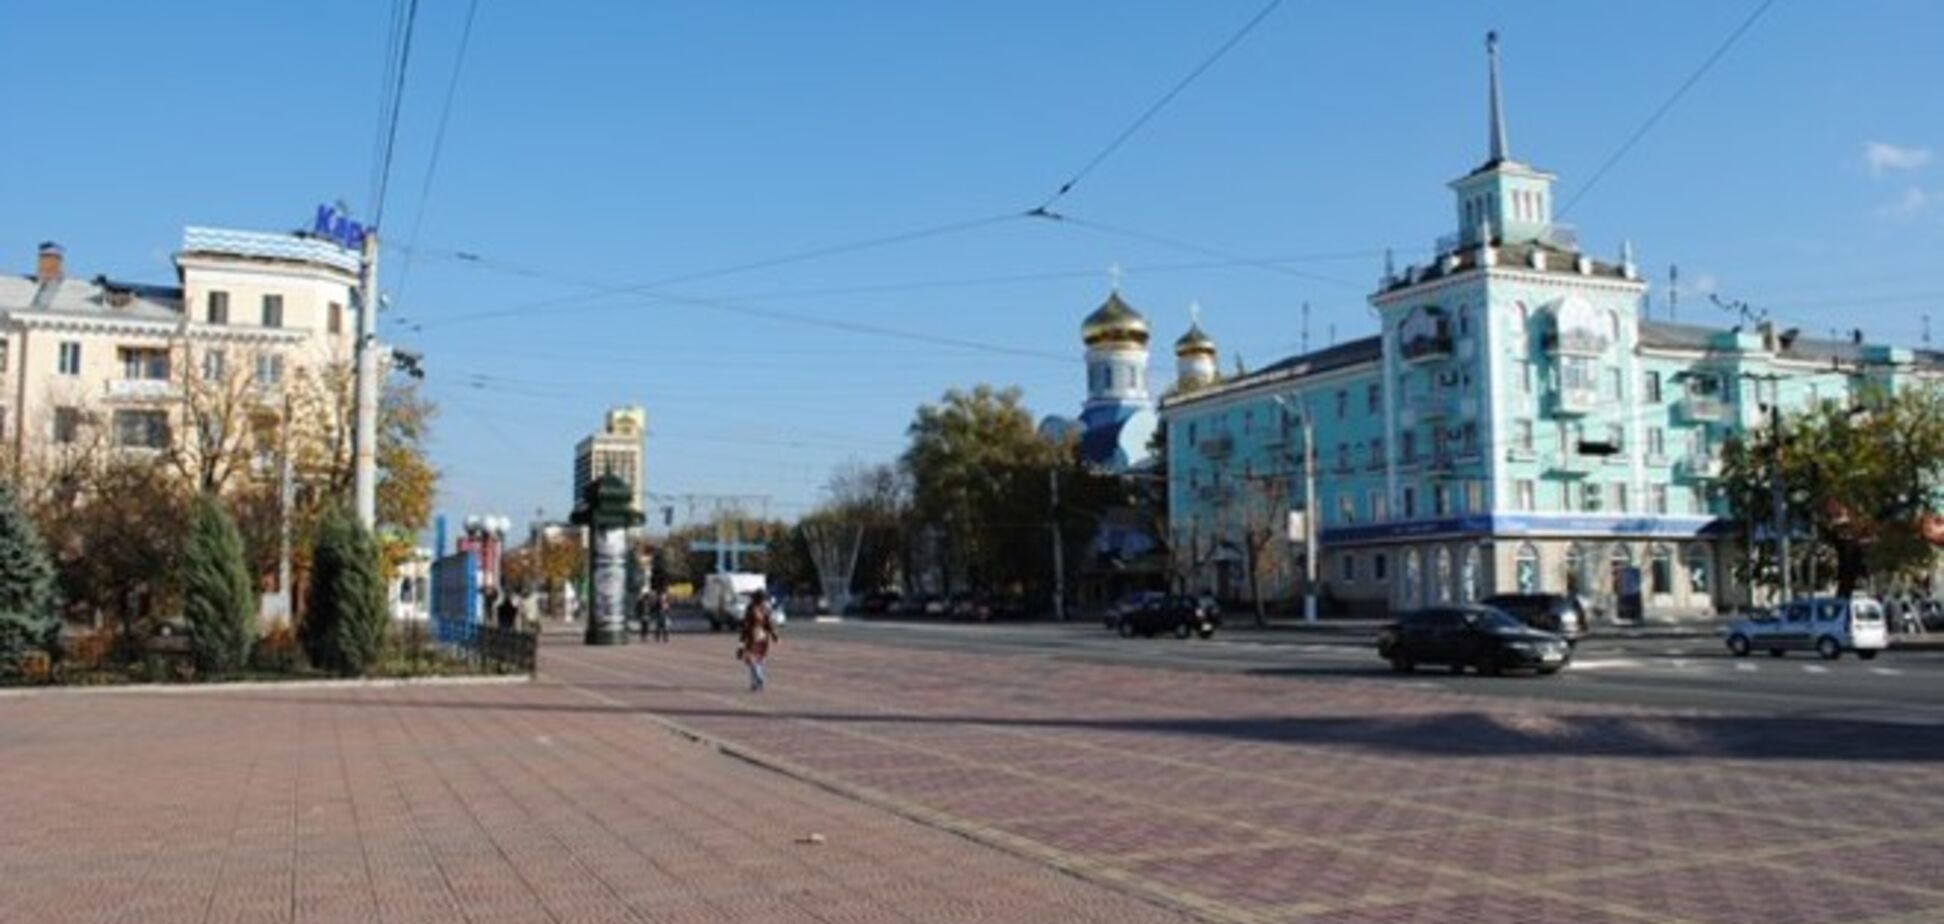 В Луганске сутки прошли спокойно - горсовет